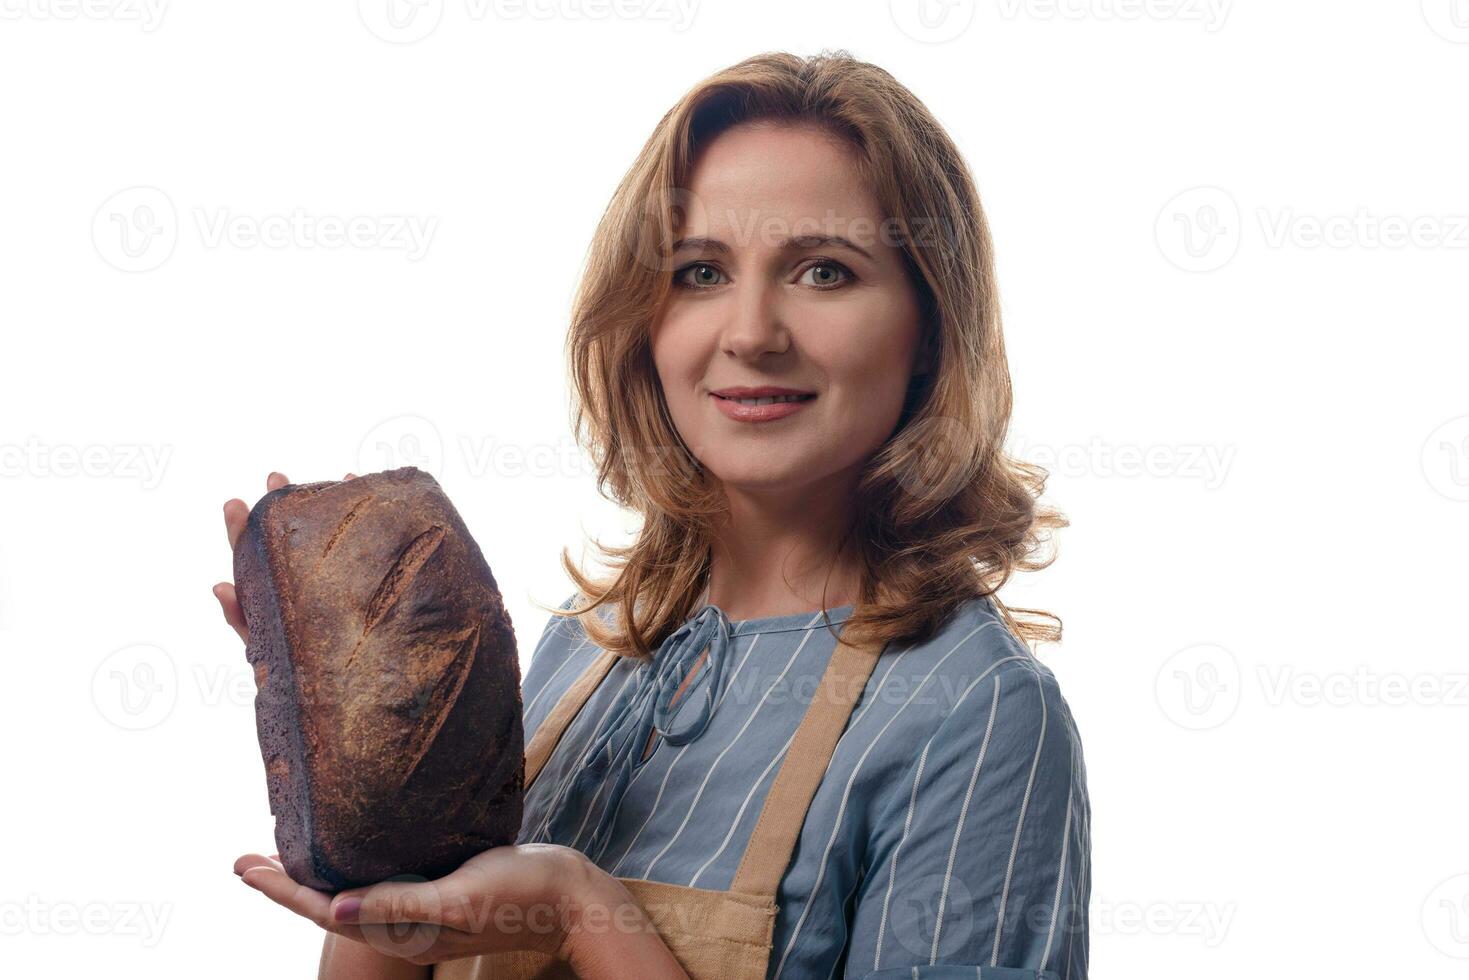 stänga upp porträtt av kvinna i förkläde som visar en surdeg hemlagad bröd, isolerat på vit bakgrund foto